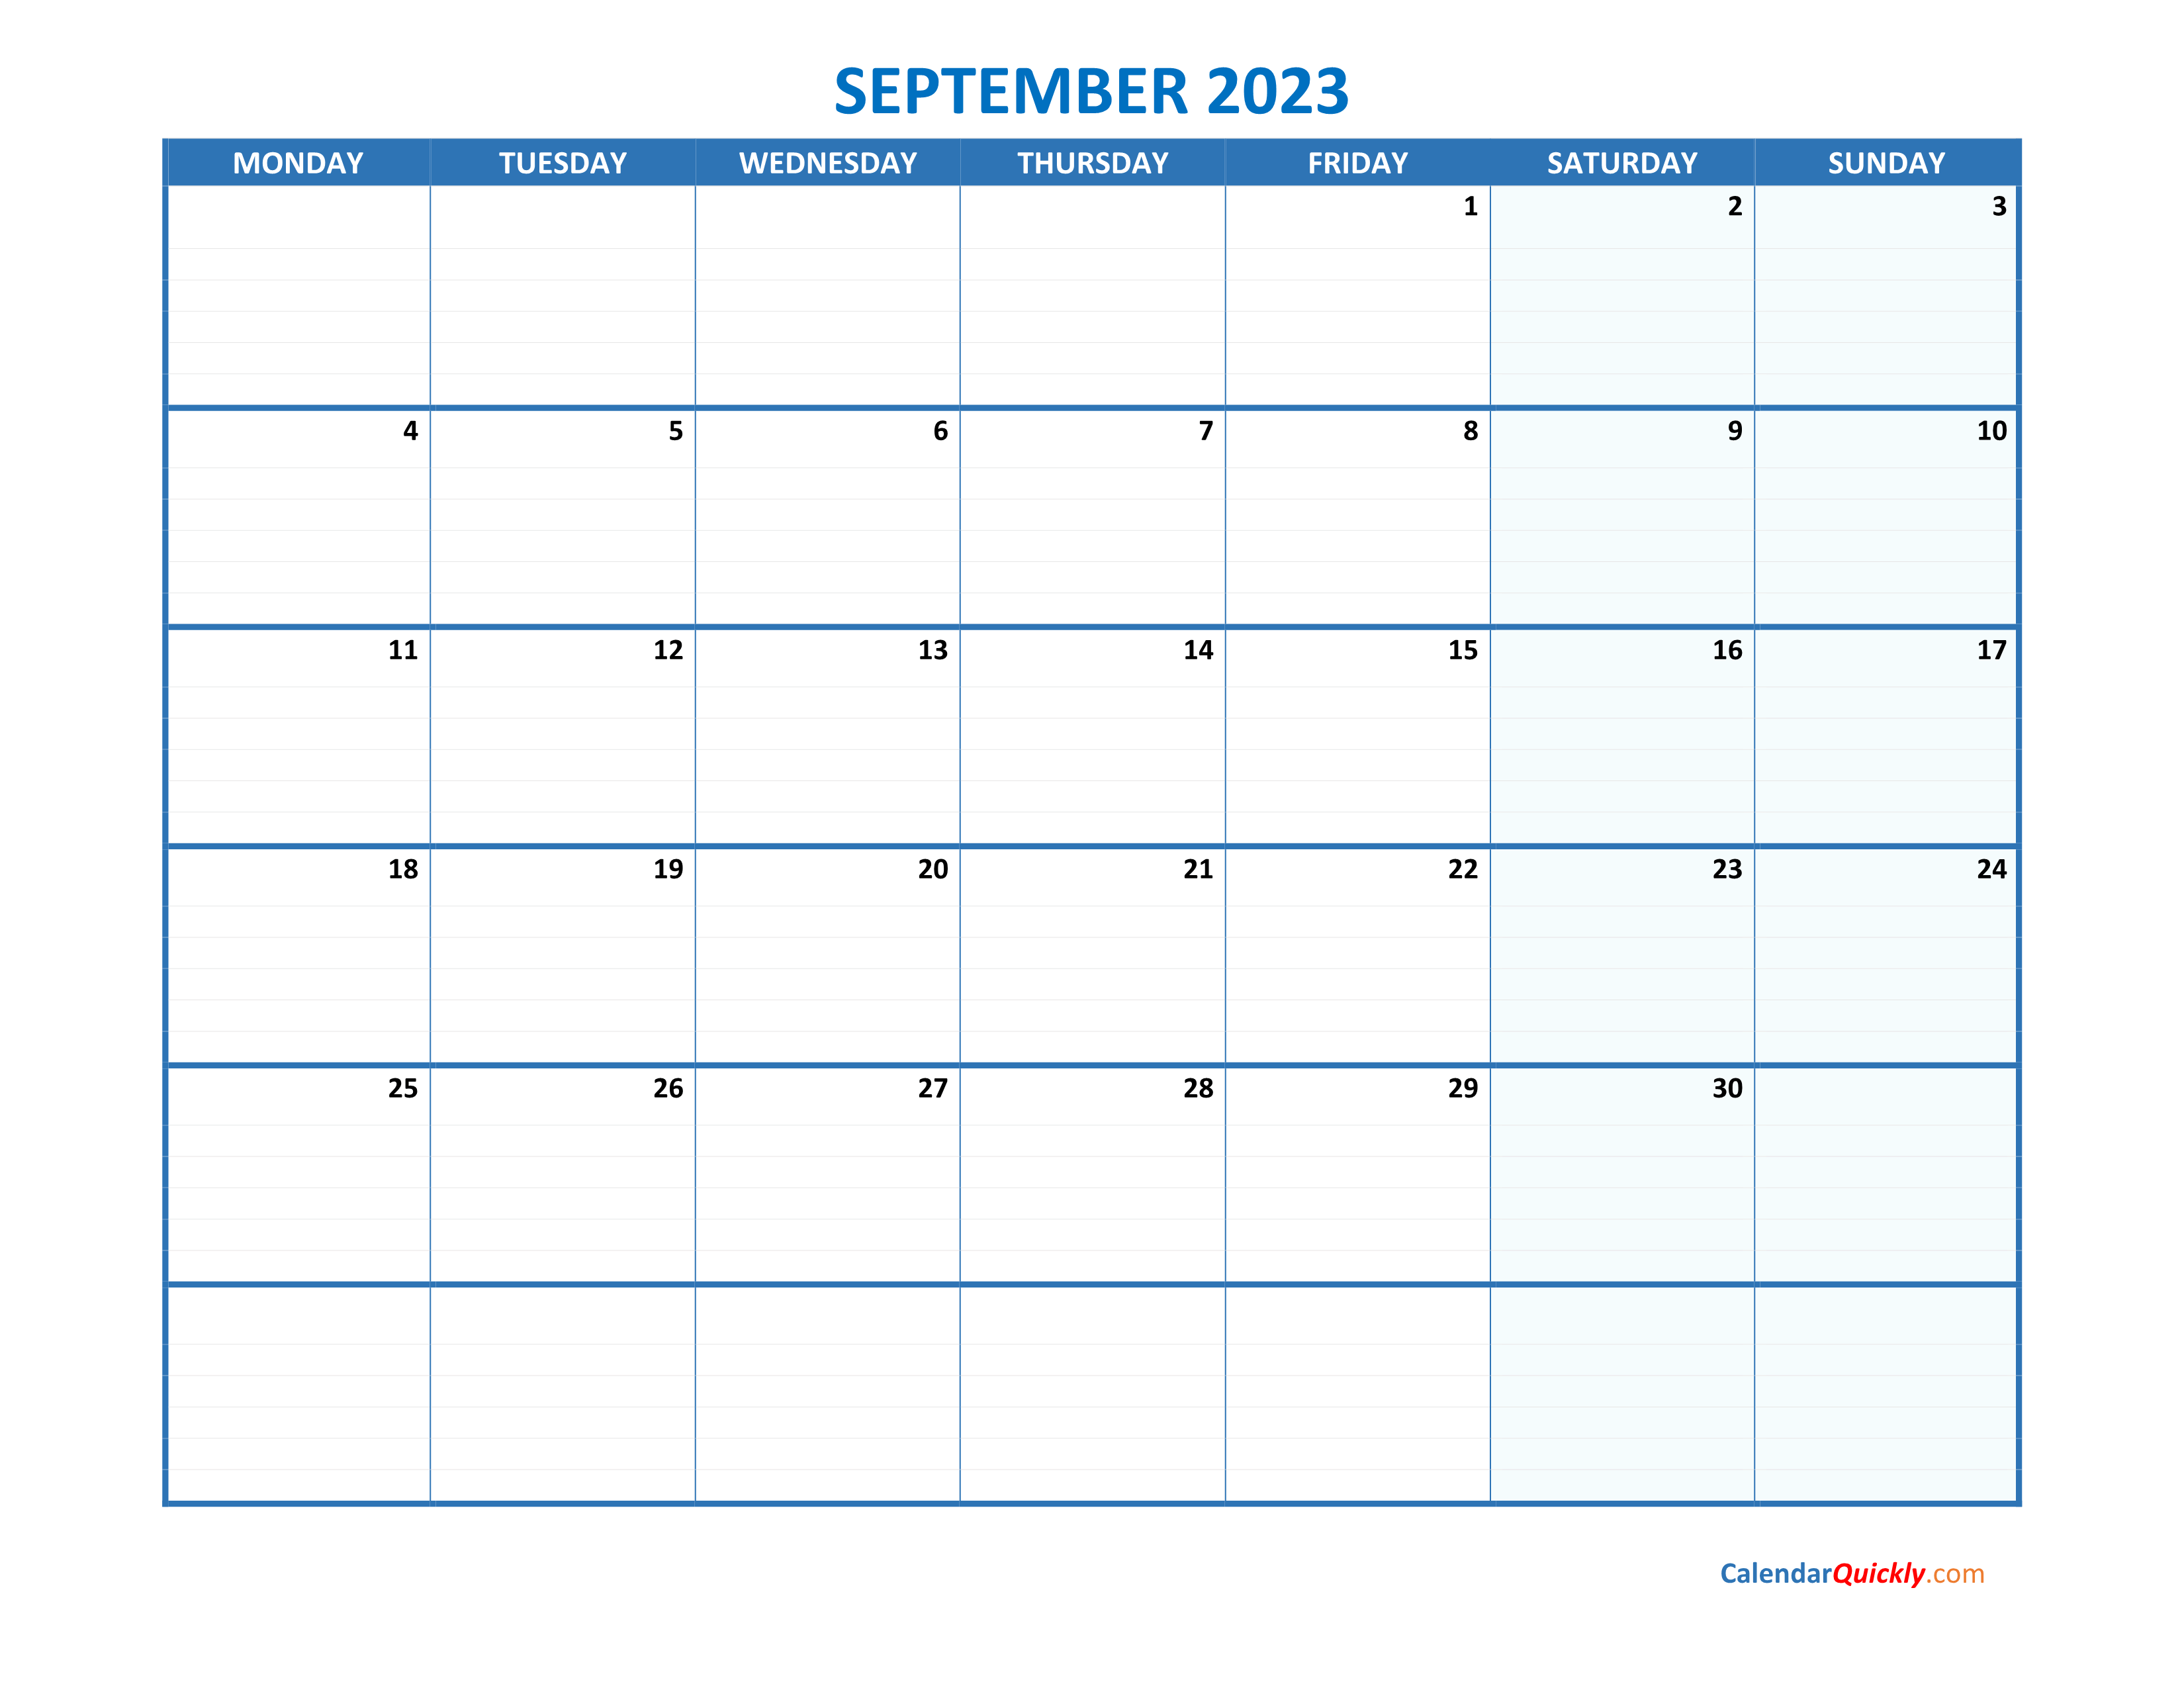 september-monday-2023-blank-calendar-calendar-quickly